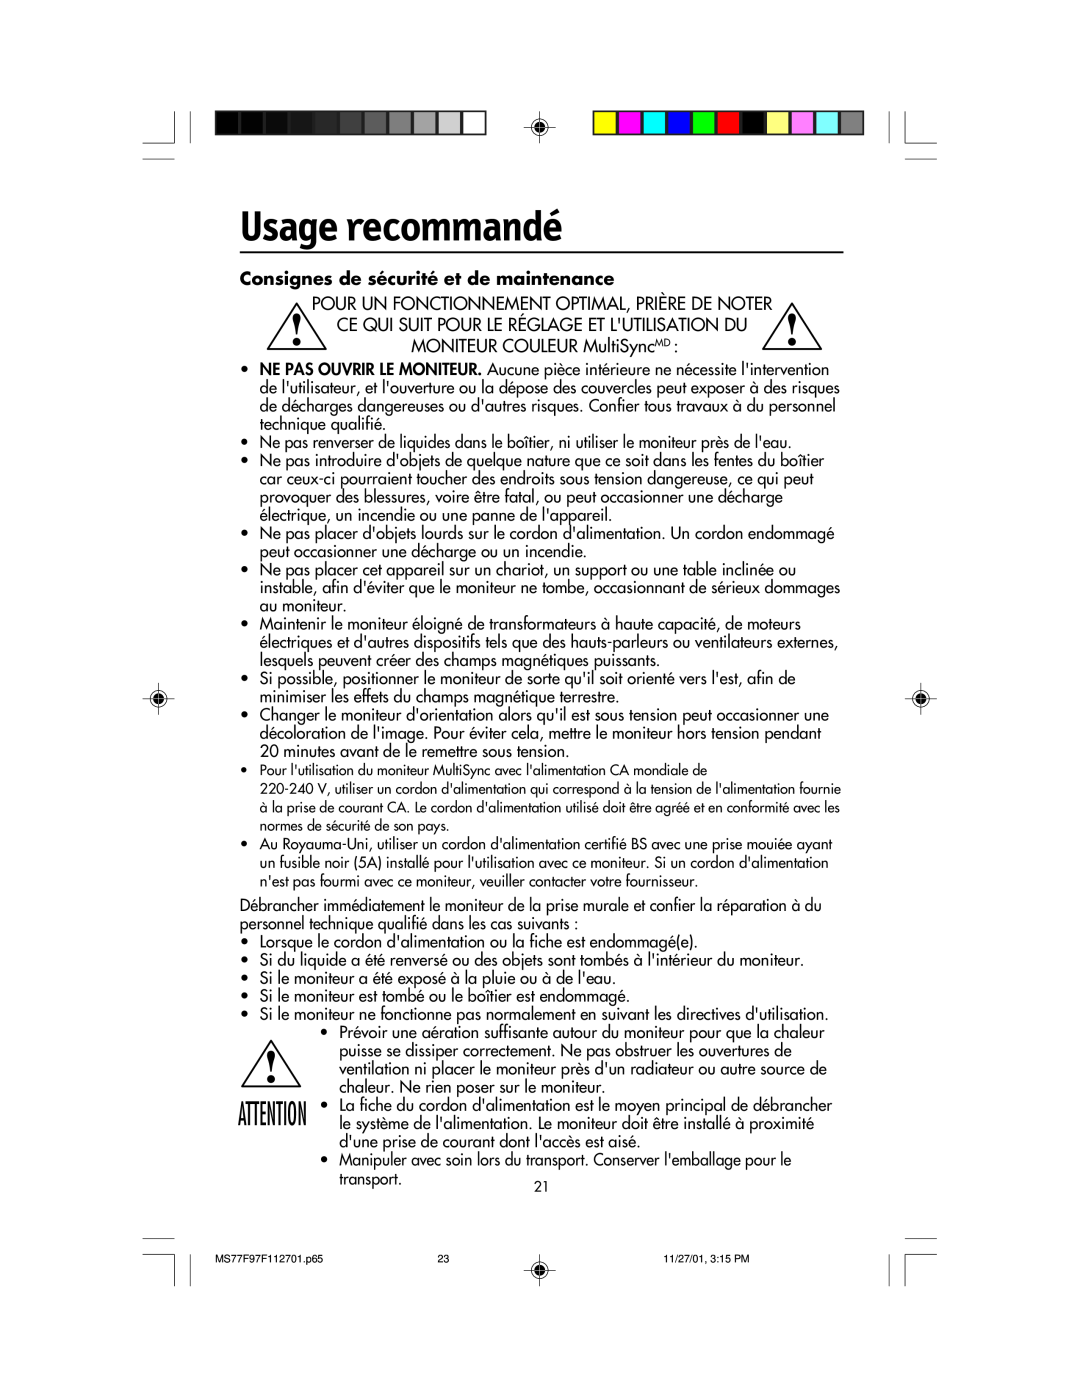 NEC 77F, 97F manual Usage recommandé, Consignes de sécurité et de maintenance 